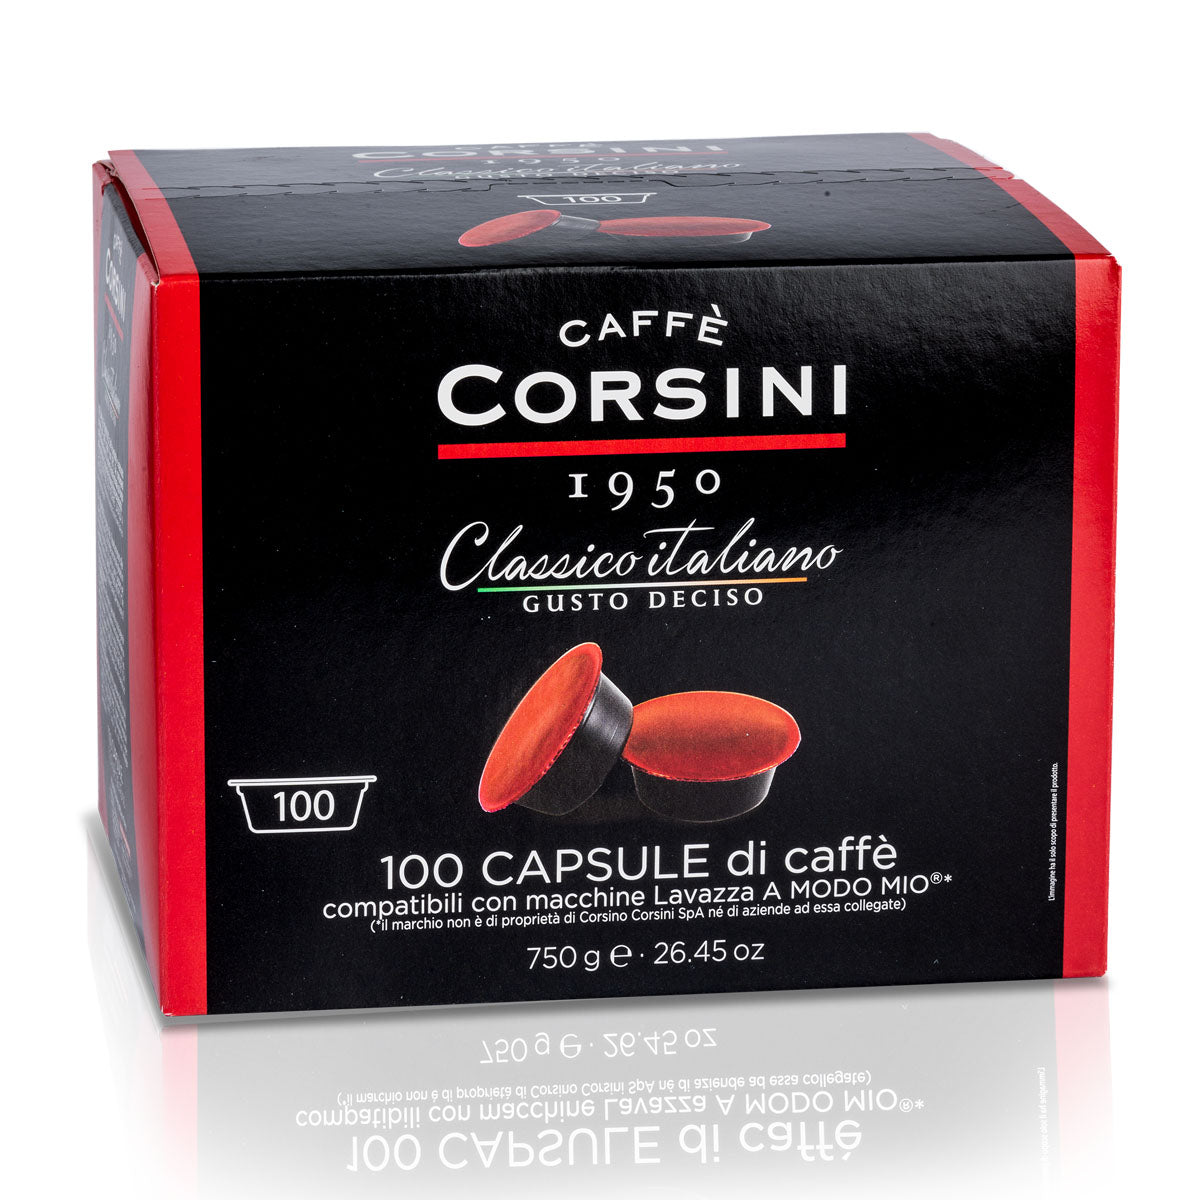 100 Lavazza®* A Modo Mio®* compatible coffee capsules per pack | Classico Italiano | Box of 4